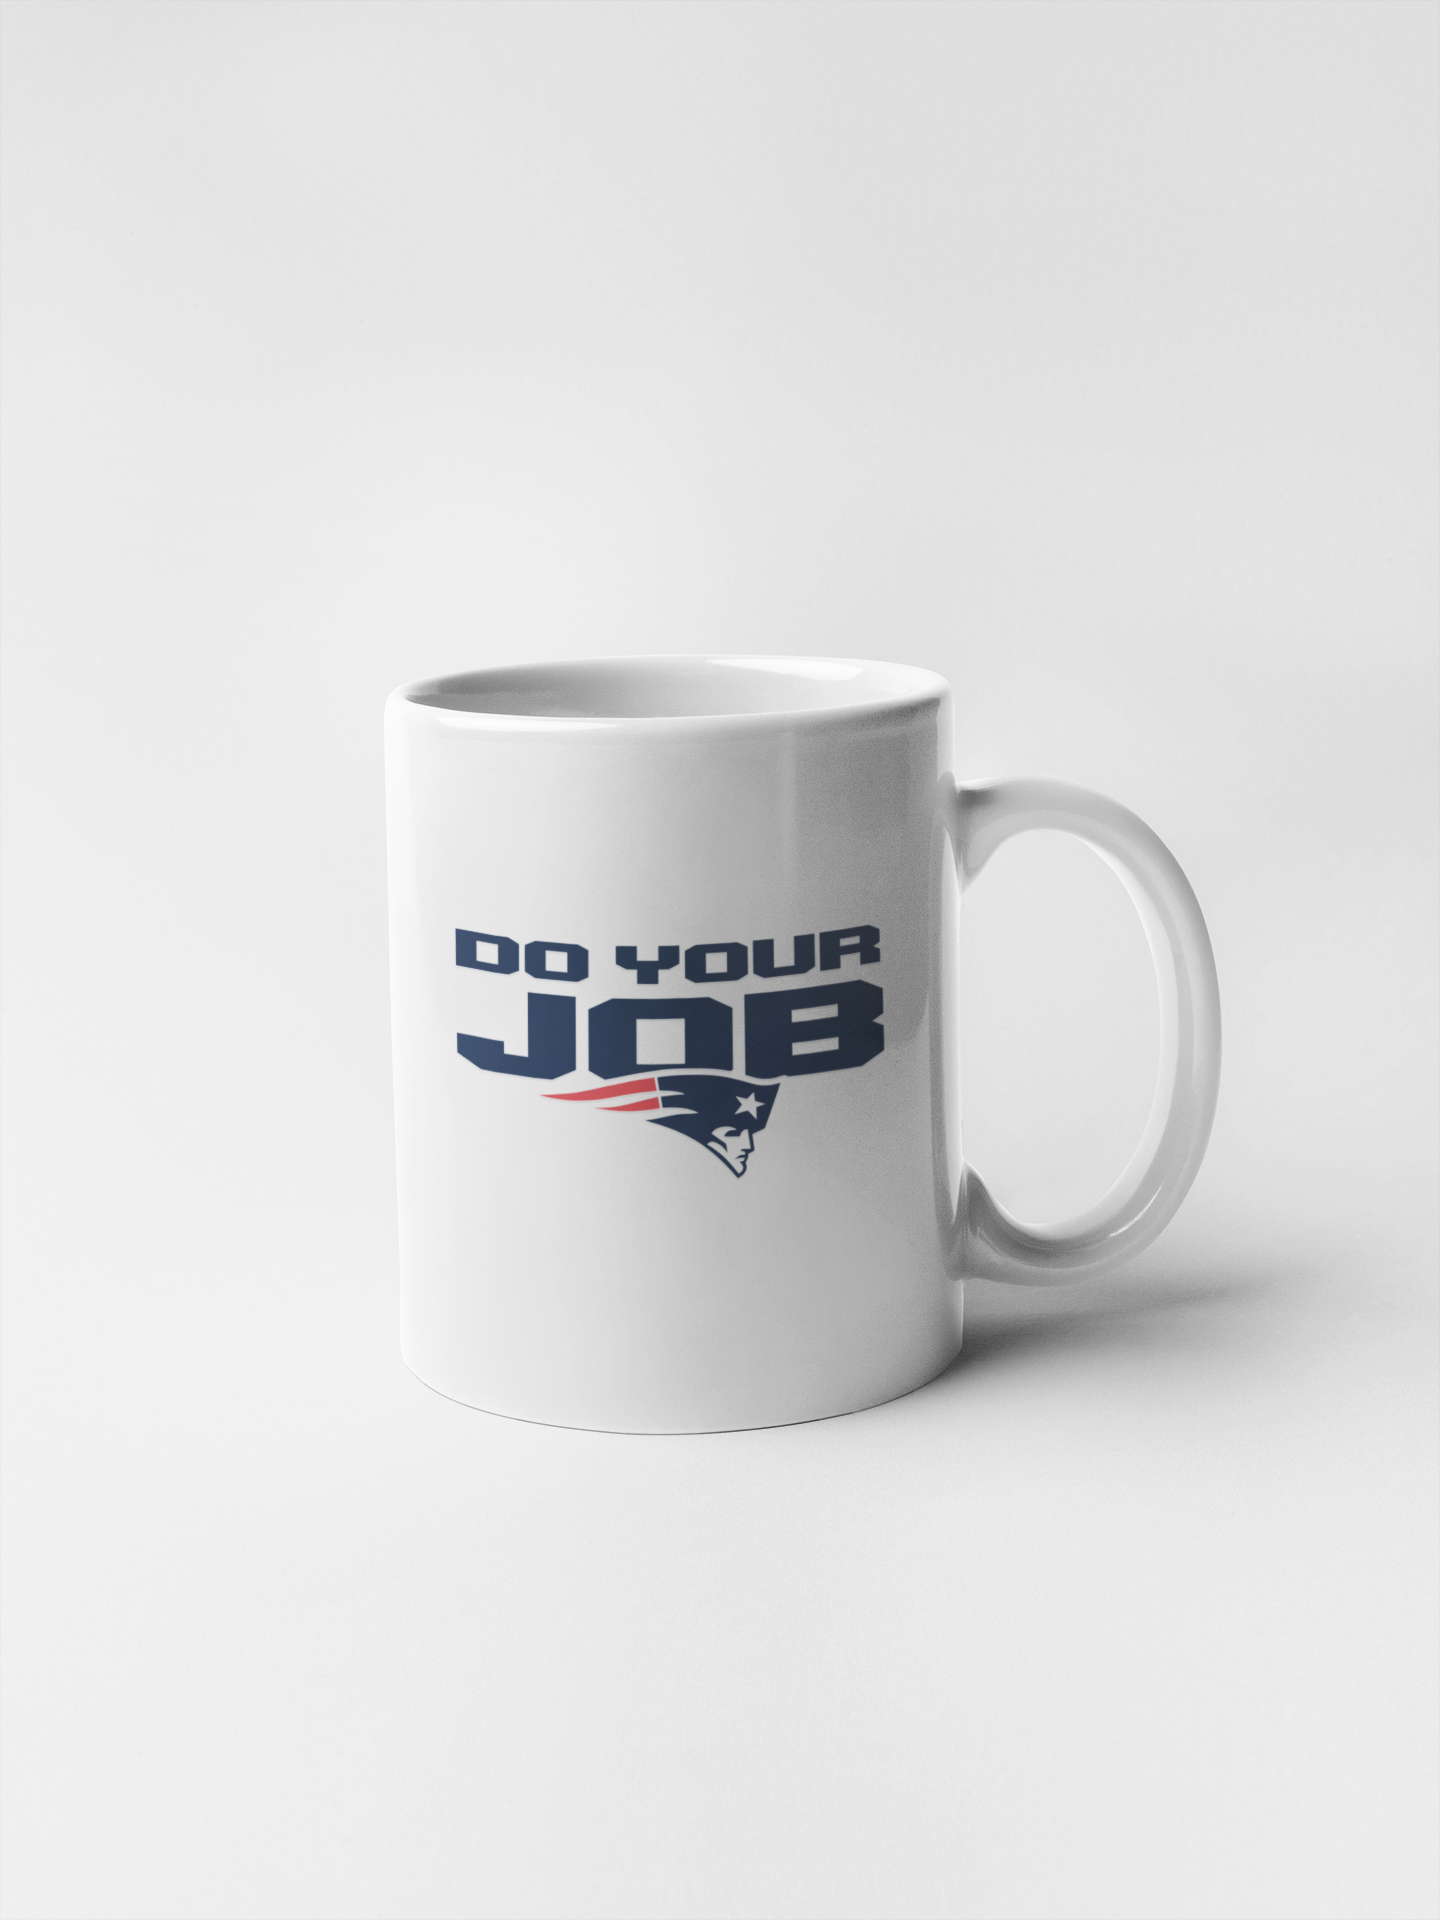 Patriots Do Your Job Ceramic Coffee Mug